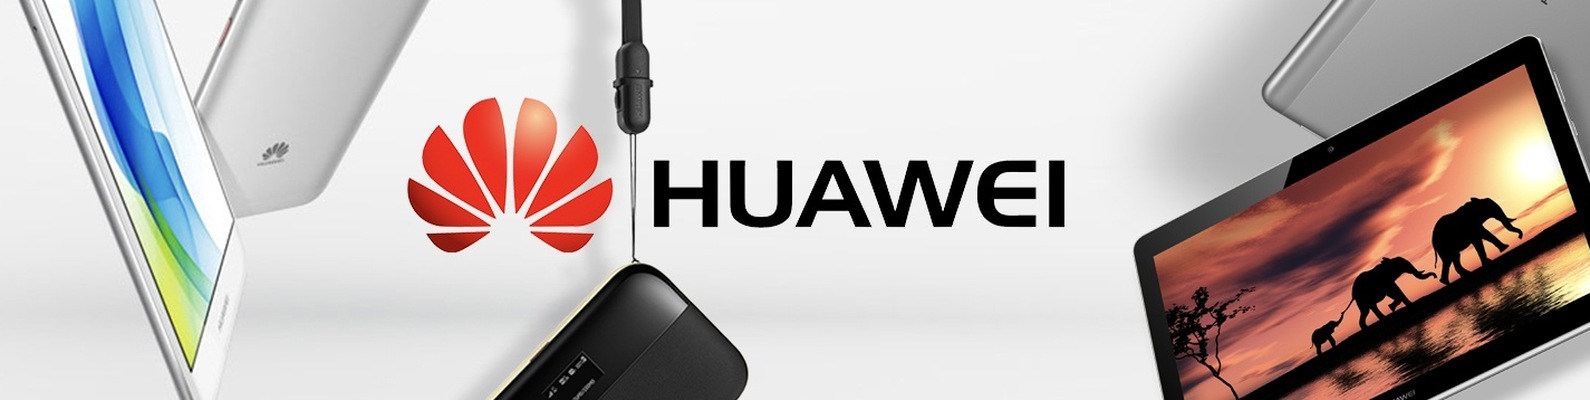 Вы сейчас просматриваете Обновления для 89 моделей устройств Huawei и Honor до Hongmeng HarmonyOS 2.0.0.230 и выше